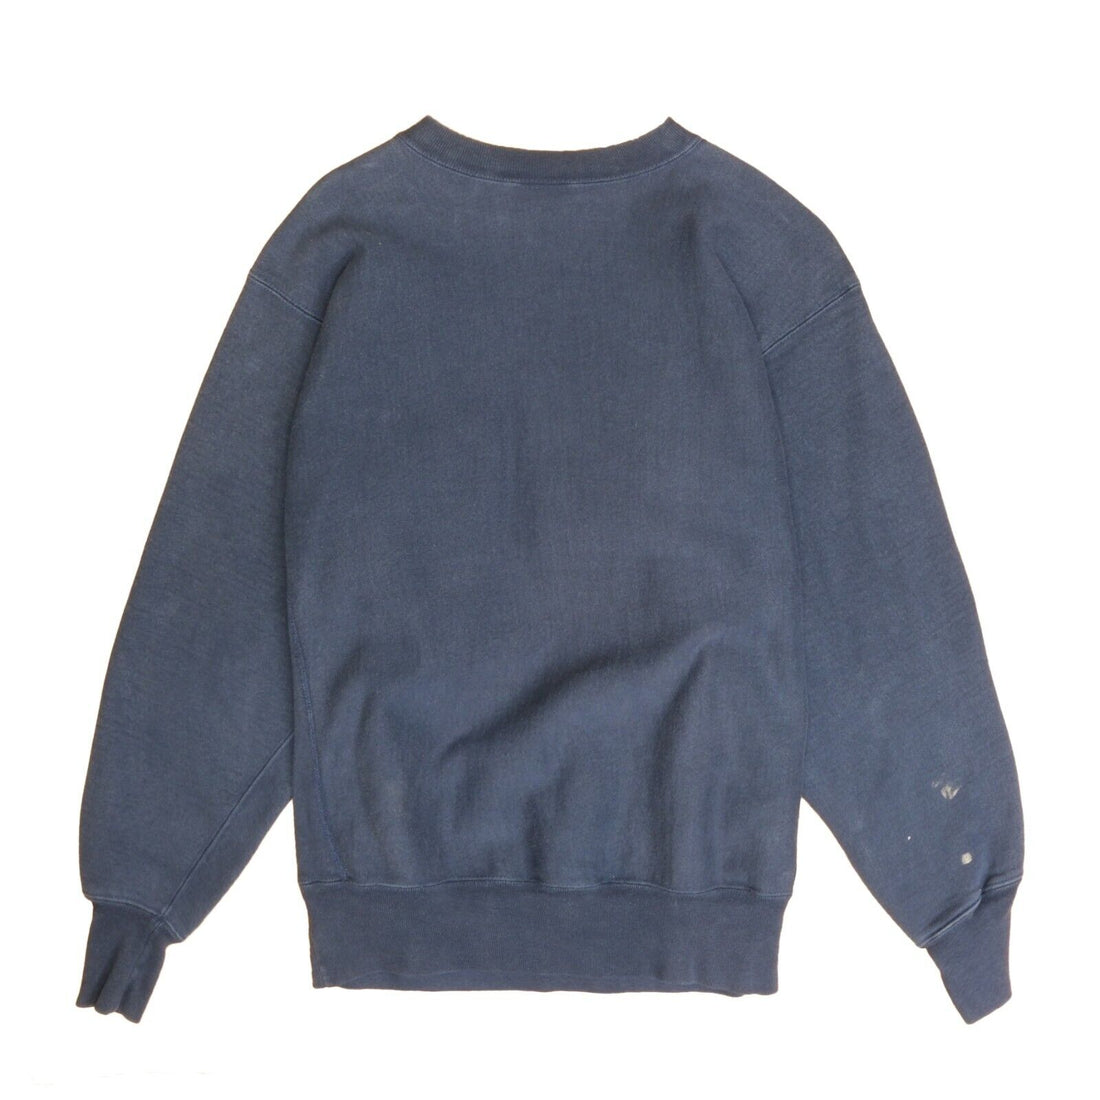 Vintage Dudley Champion Reverse Weave Sweatshirt Crewneck Size Large Blue 90s